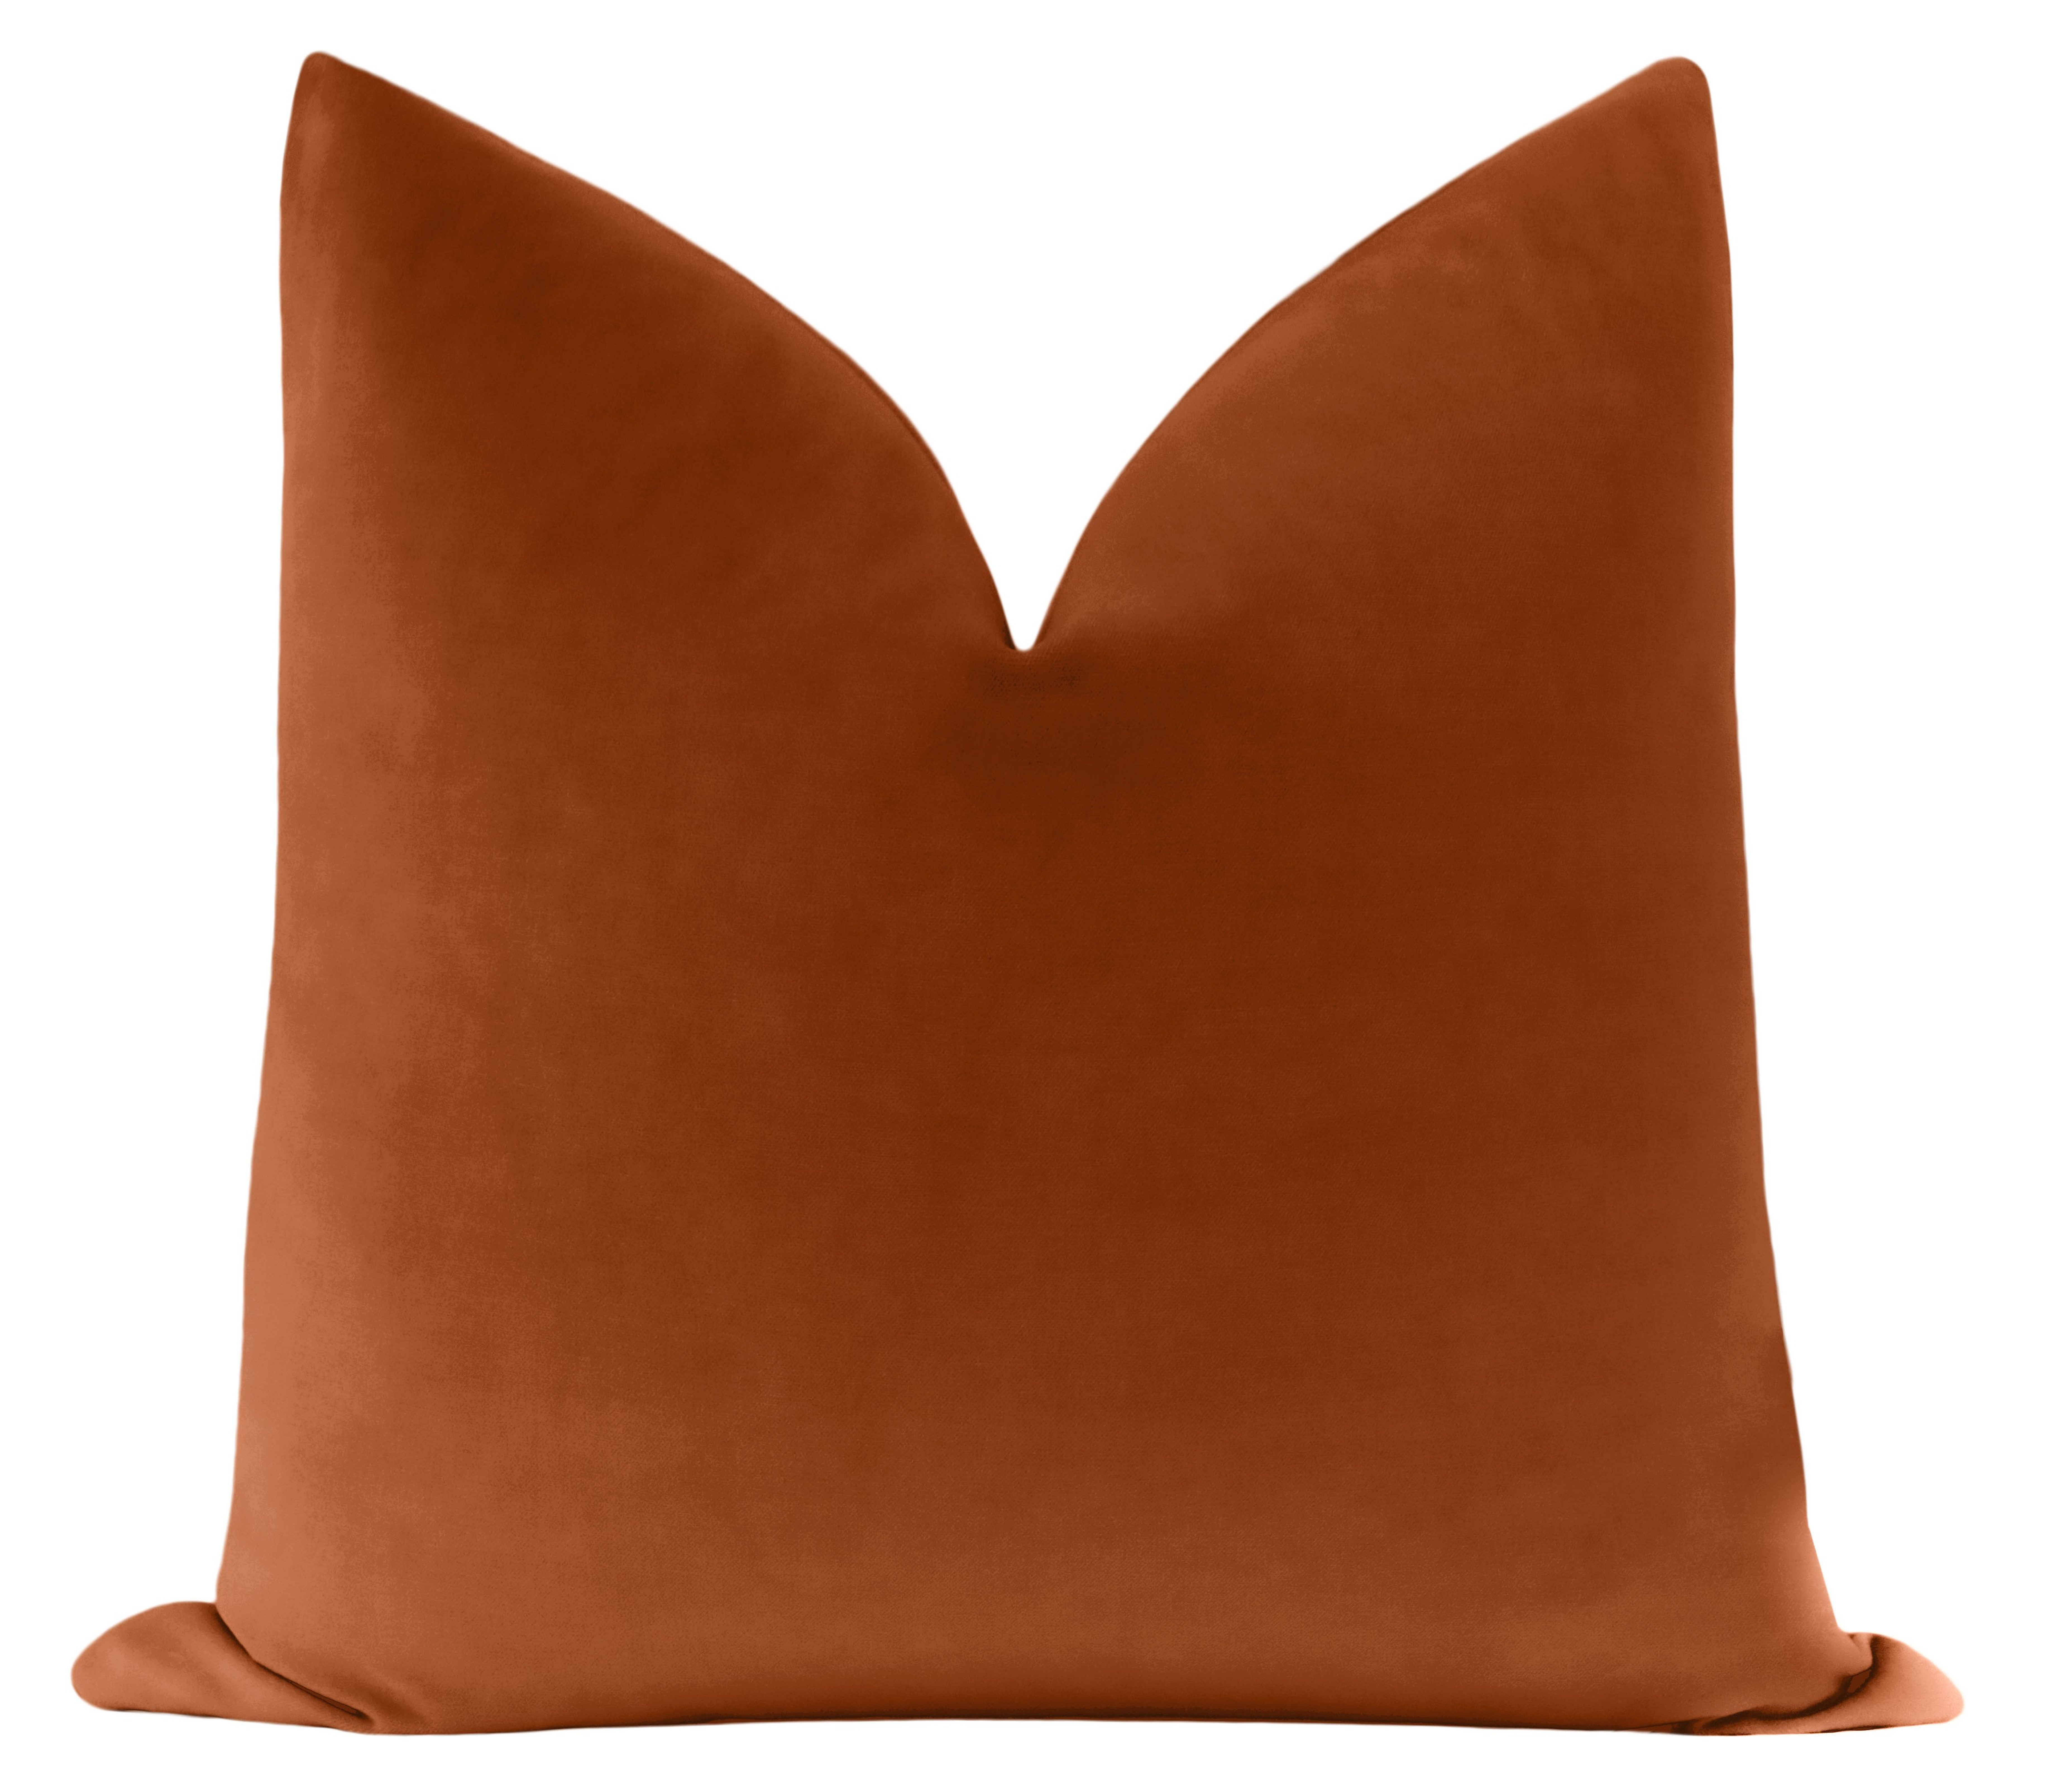 Classic Velvet Pillow Cover, Terracotta, 20" x 20" - Little Design Company